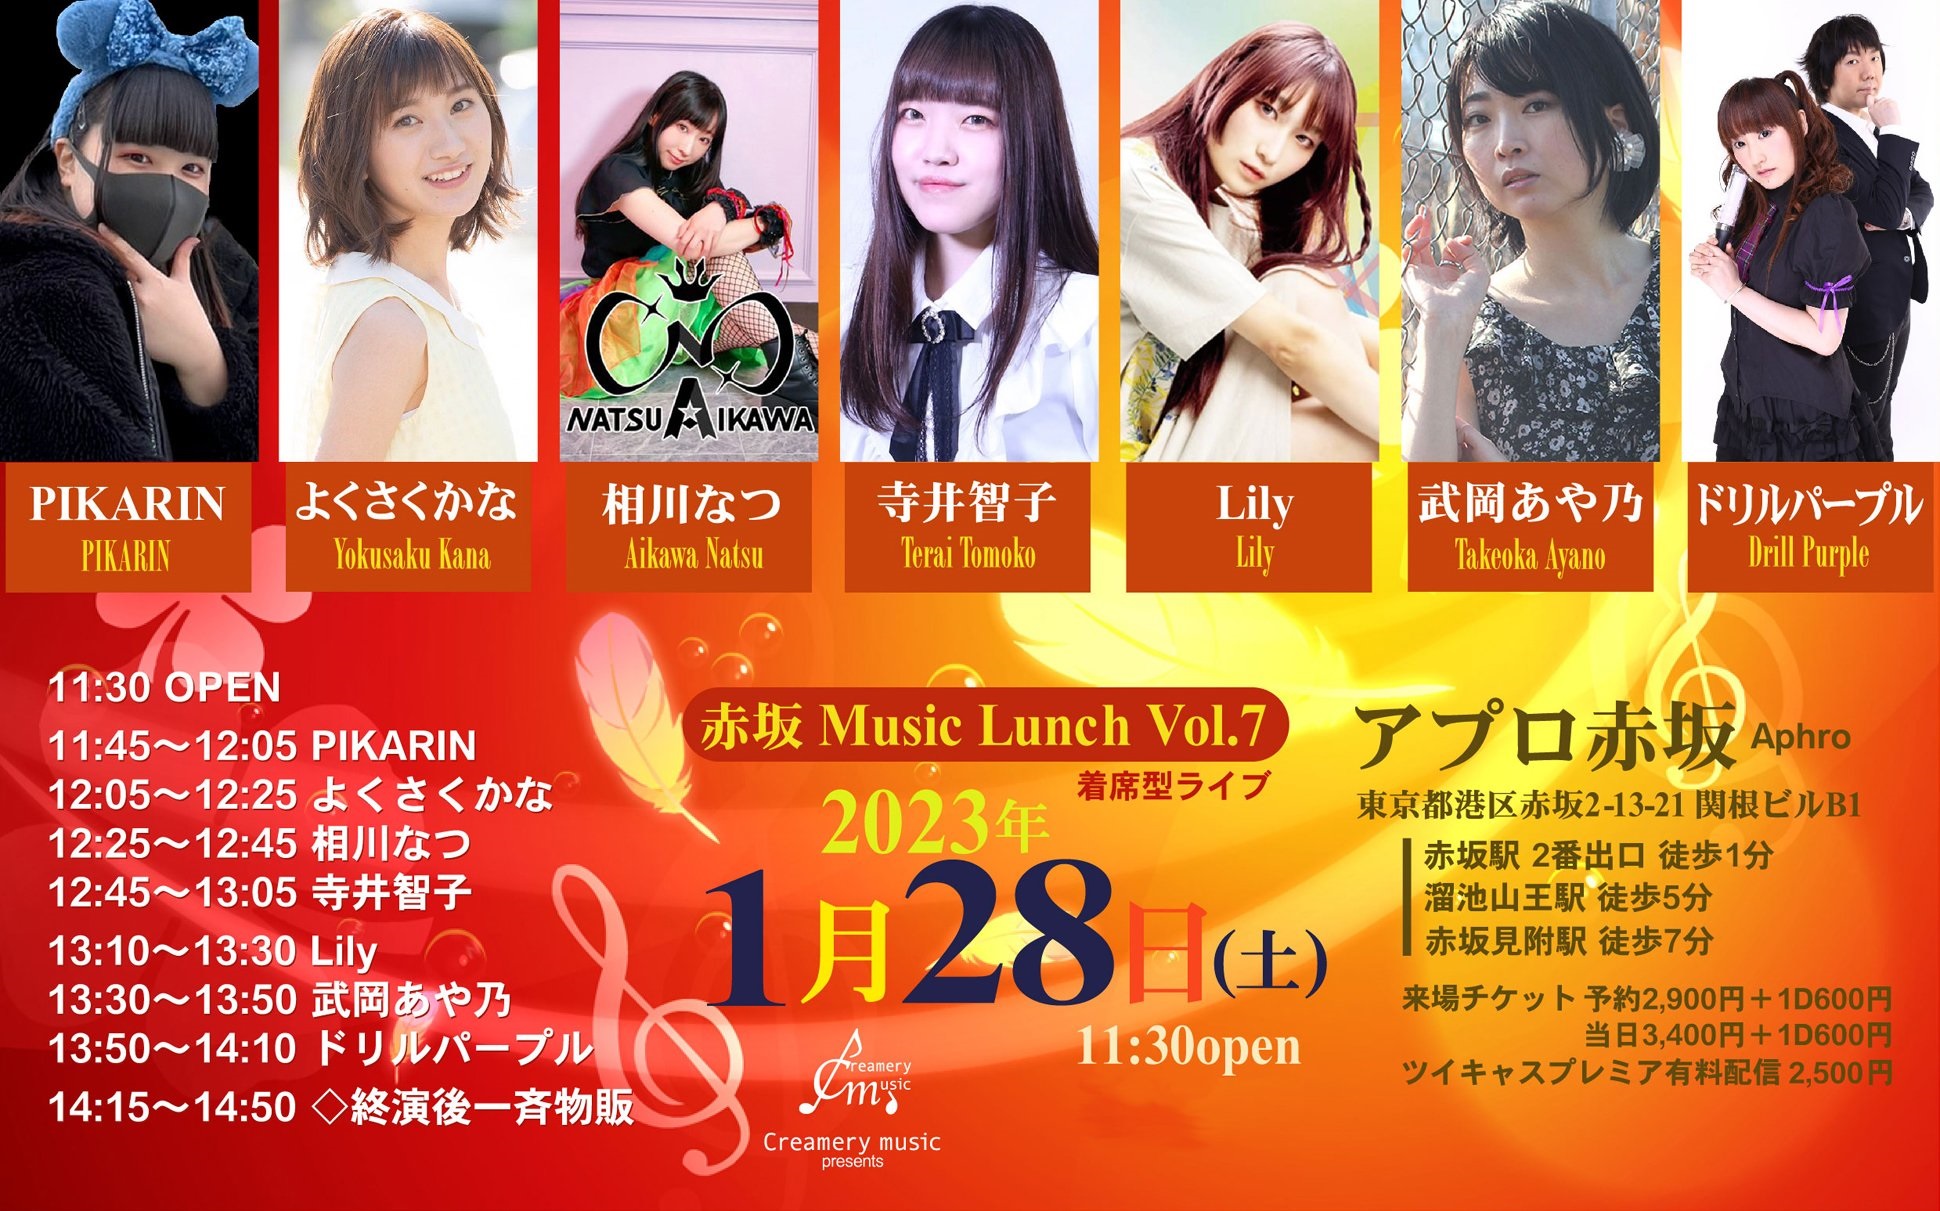 1月28日(土)「赤坂 Music Lunch Vol.7」に出演します!!!